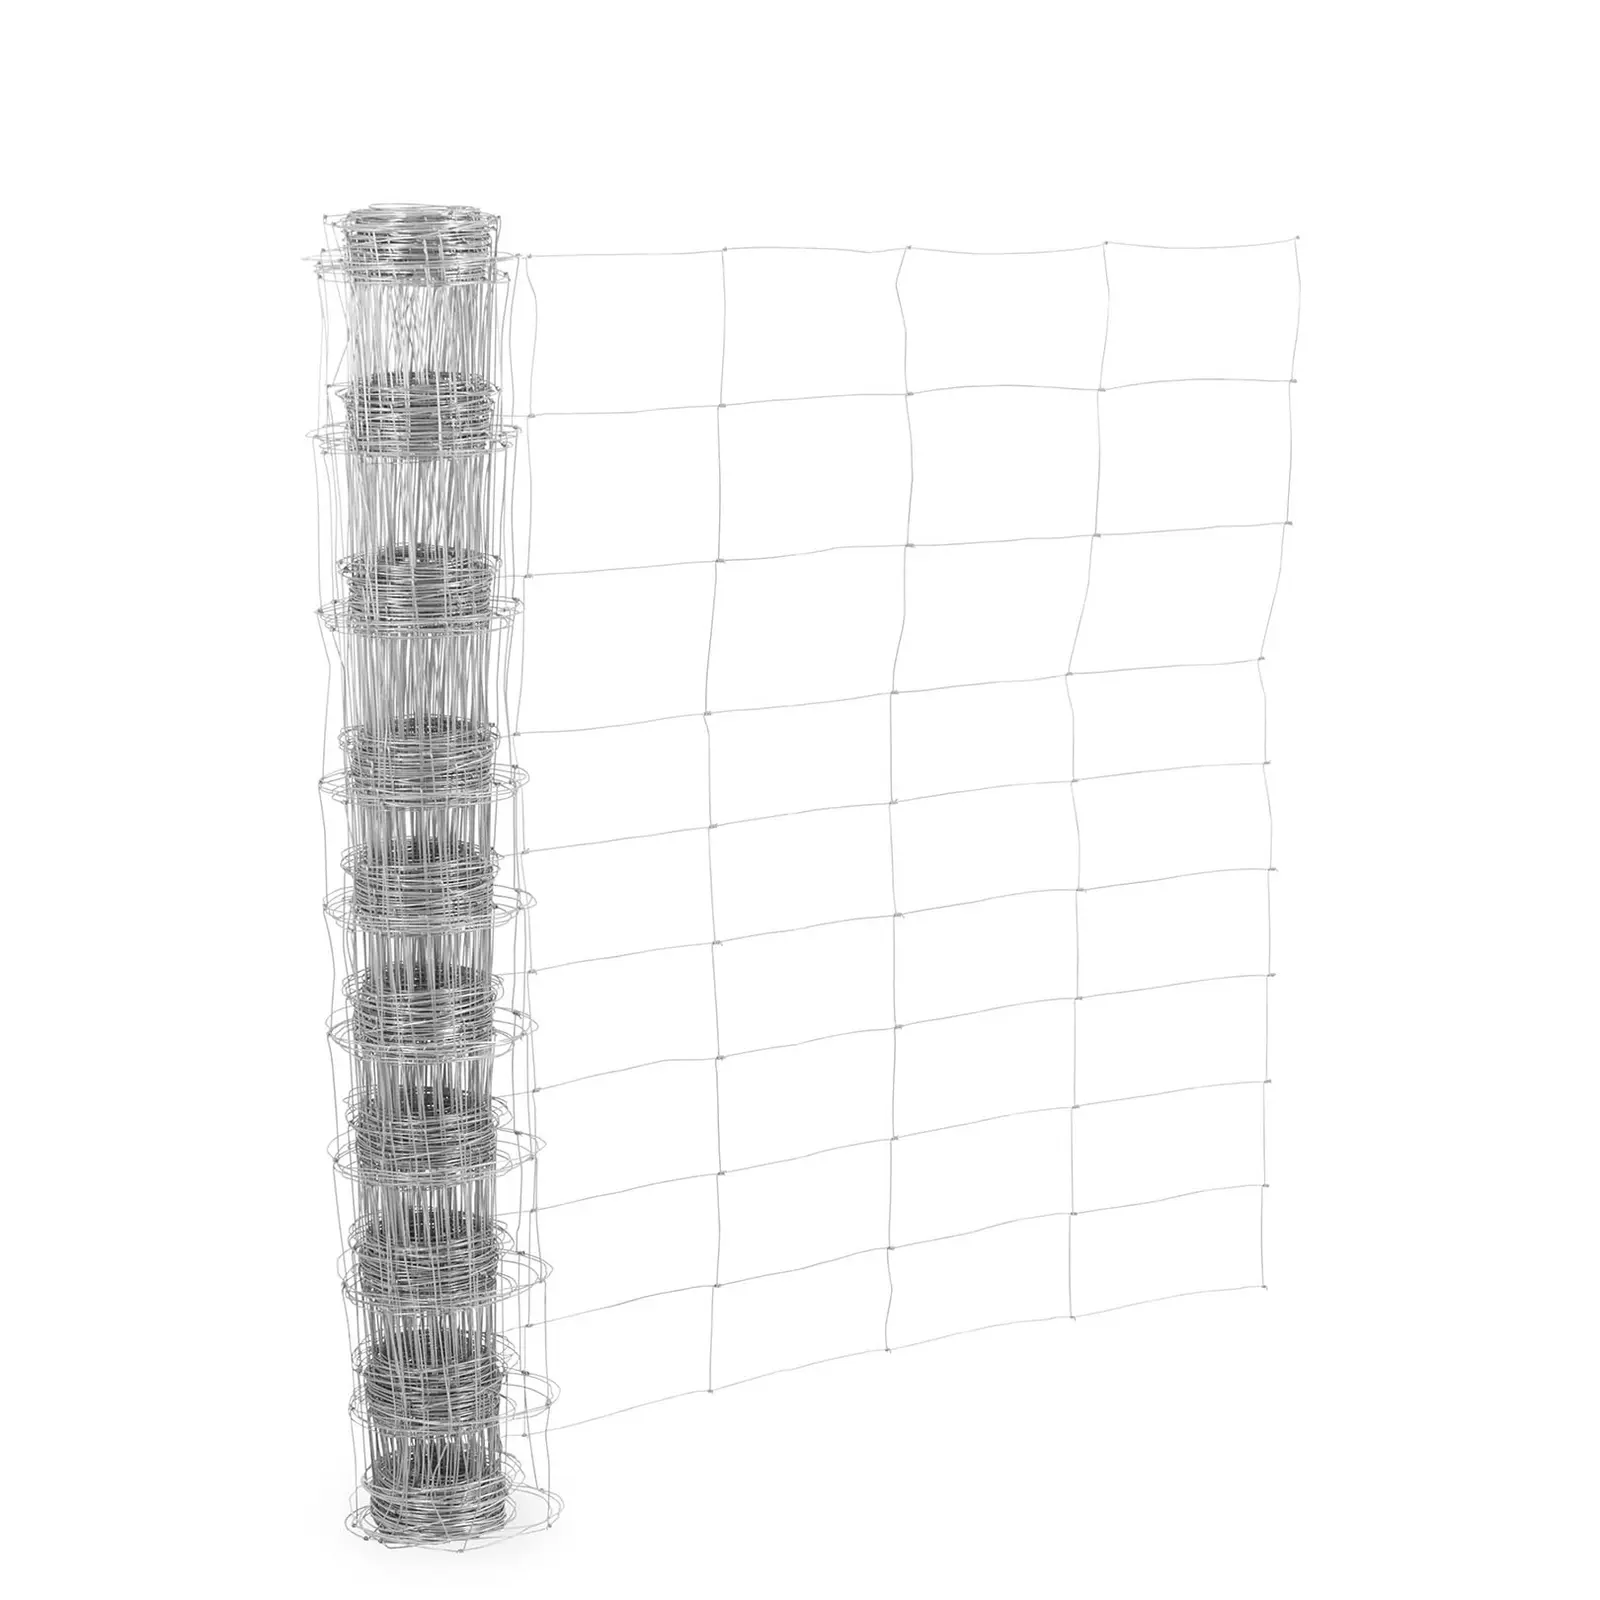 Ograja za pašnik - višina {{Višina_}} cm - dolžina 50 m - širina mreže 30 cm